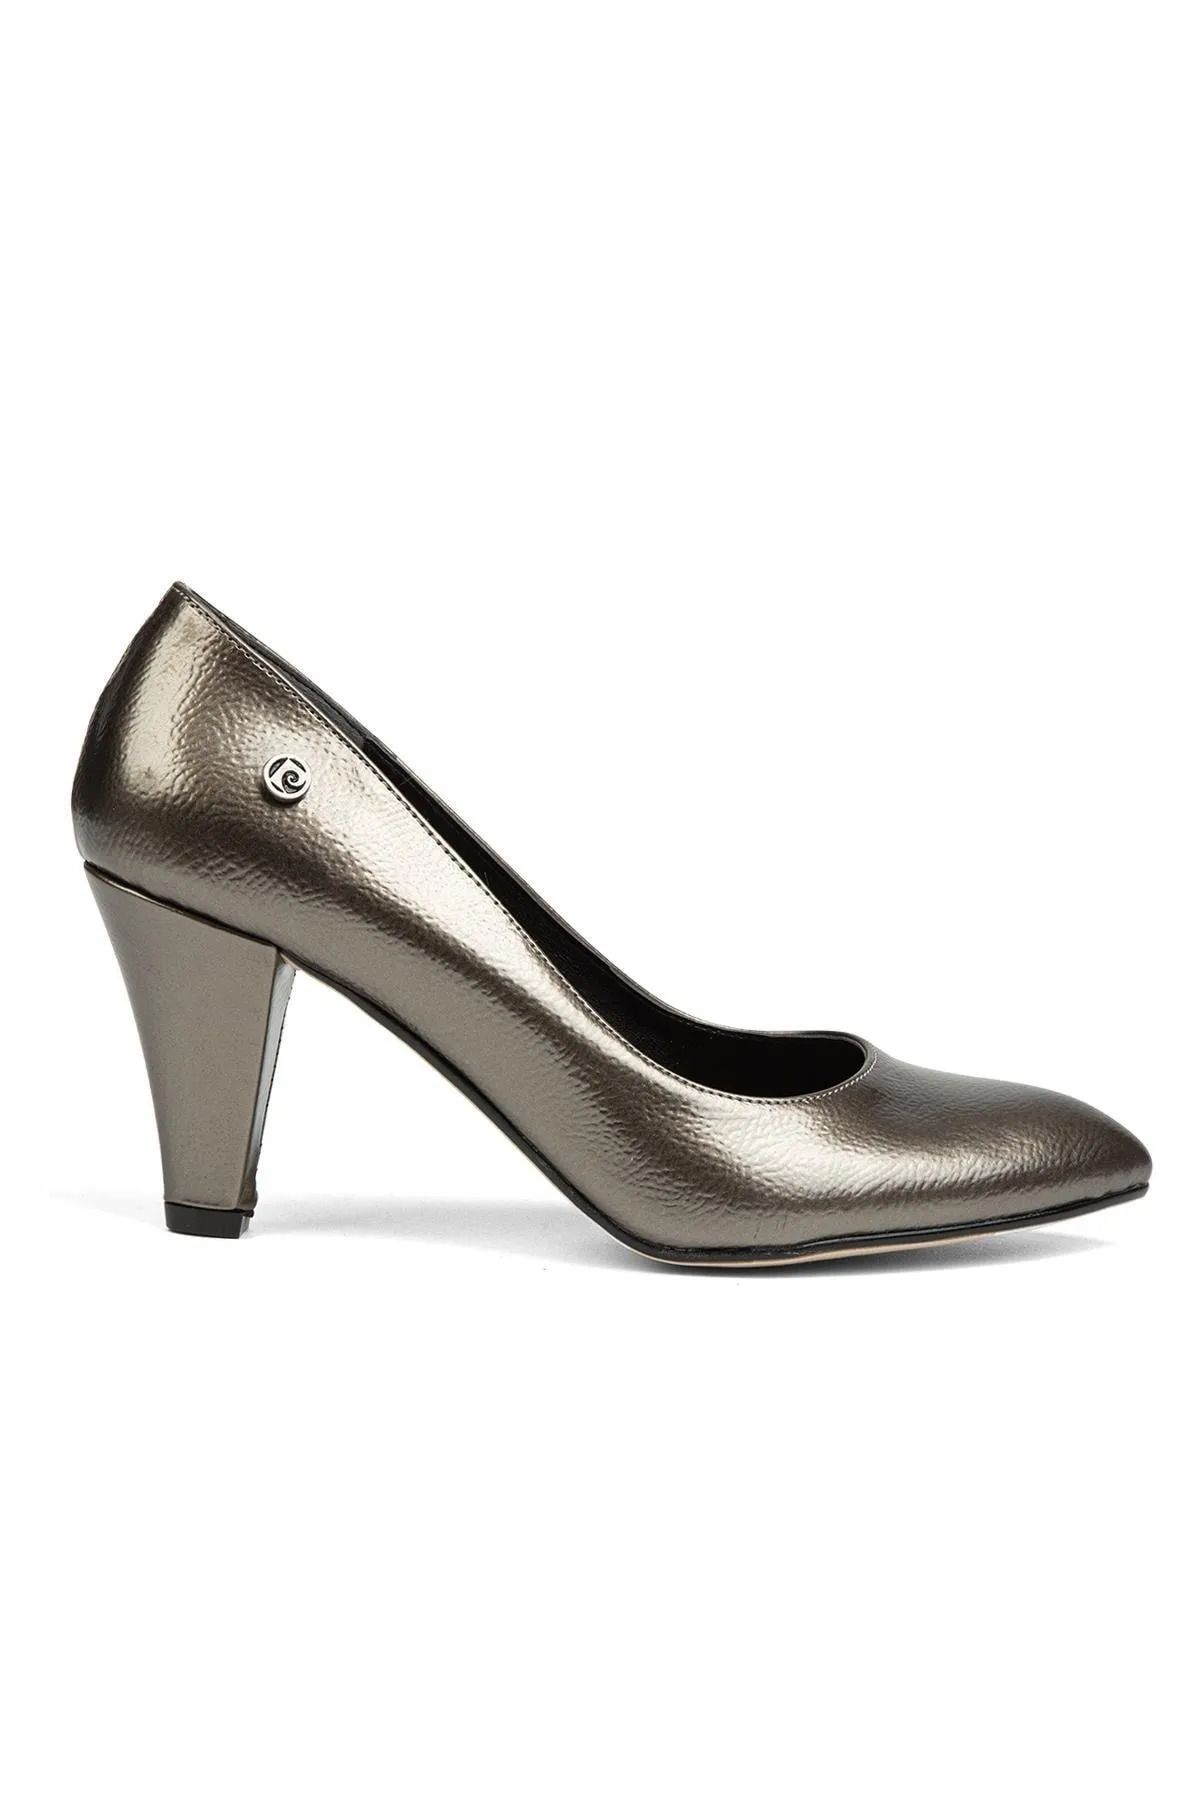 Pierre Cardin Platin Kadın Topuklu Ayakkabı Pc-52228